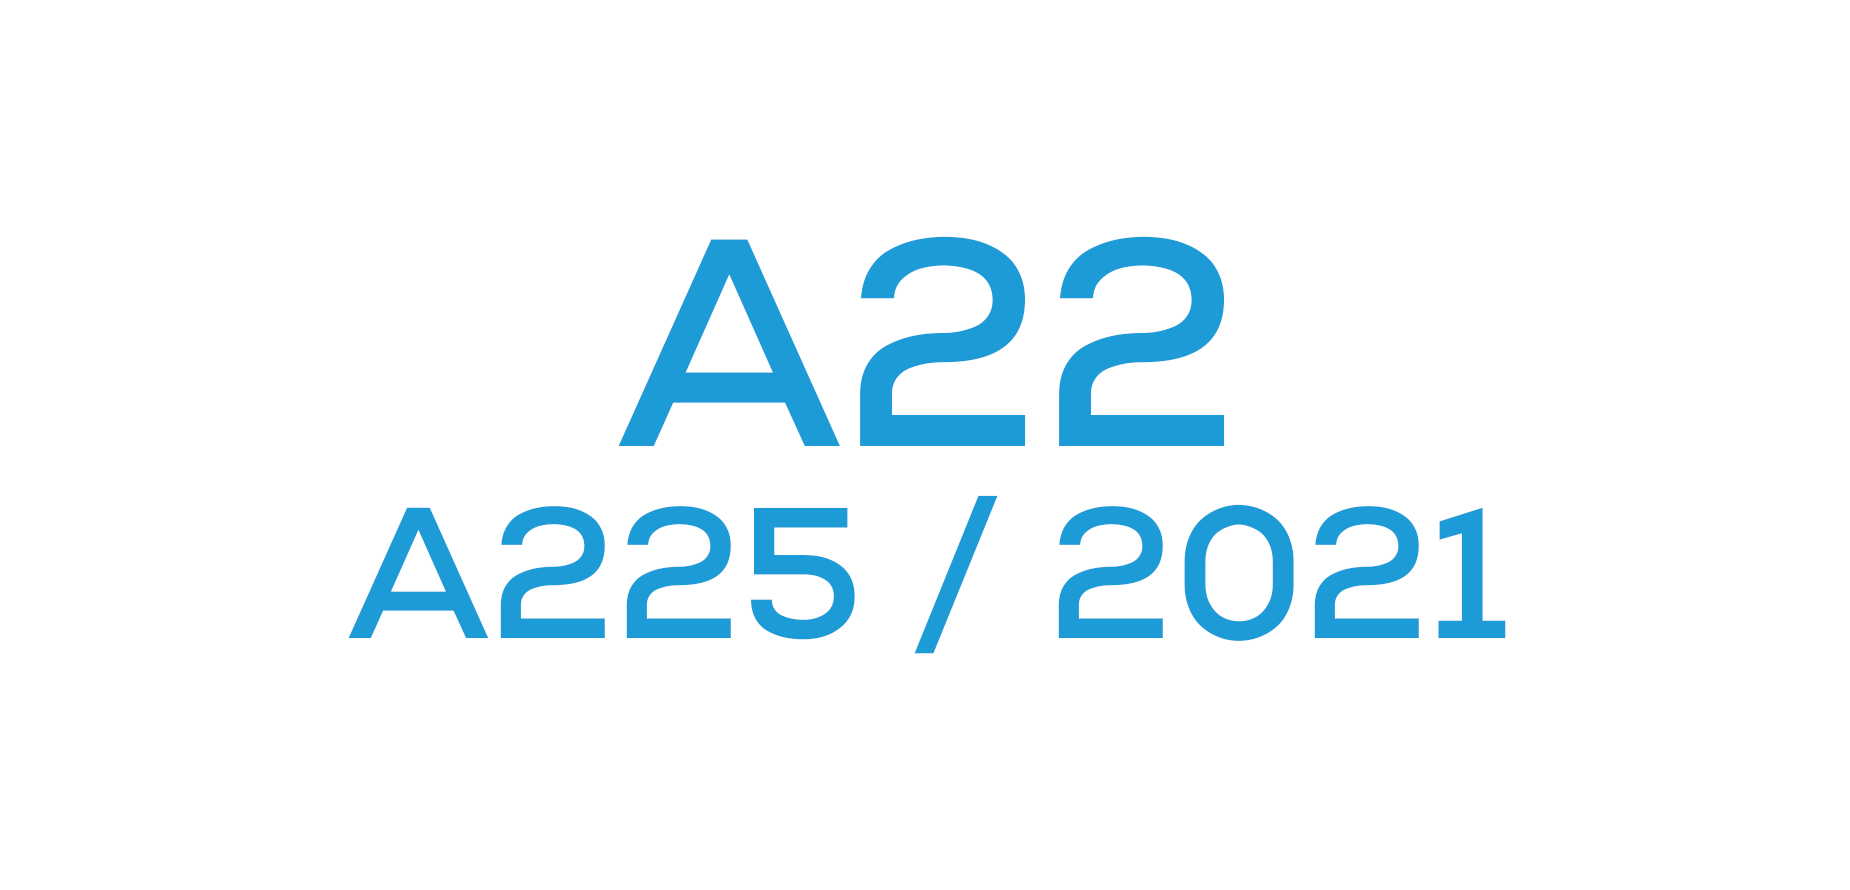 A22 4G (A225 / 2021)